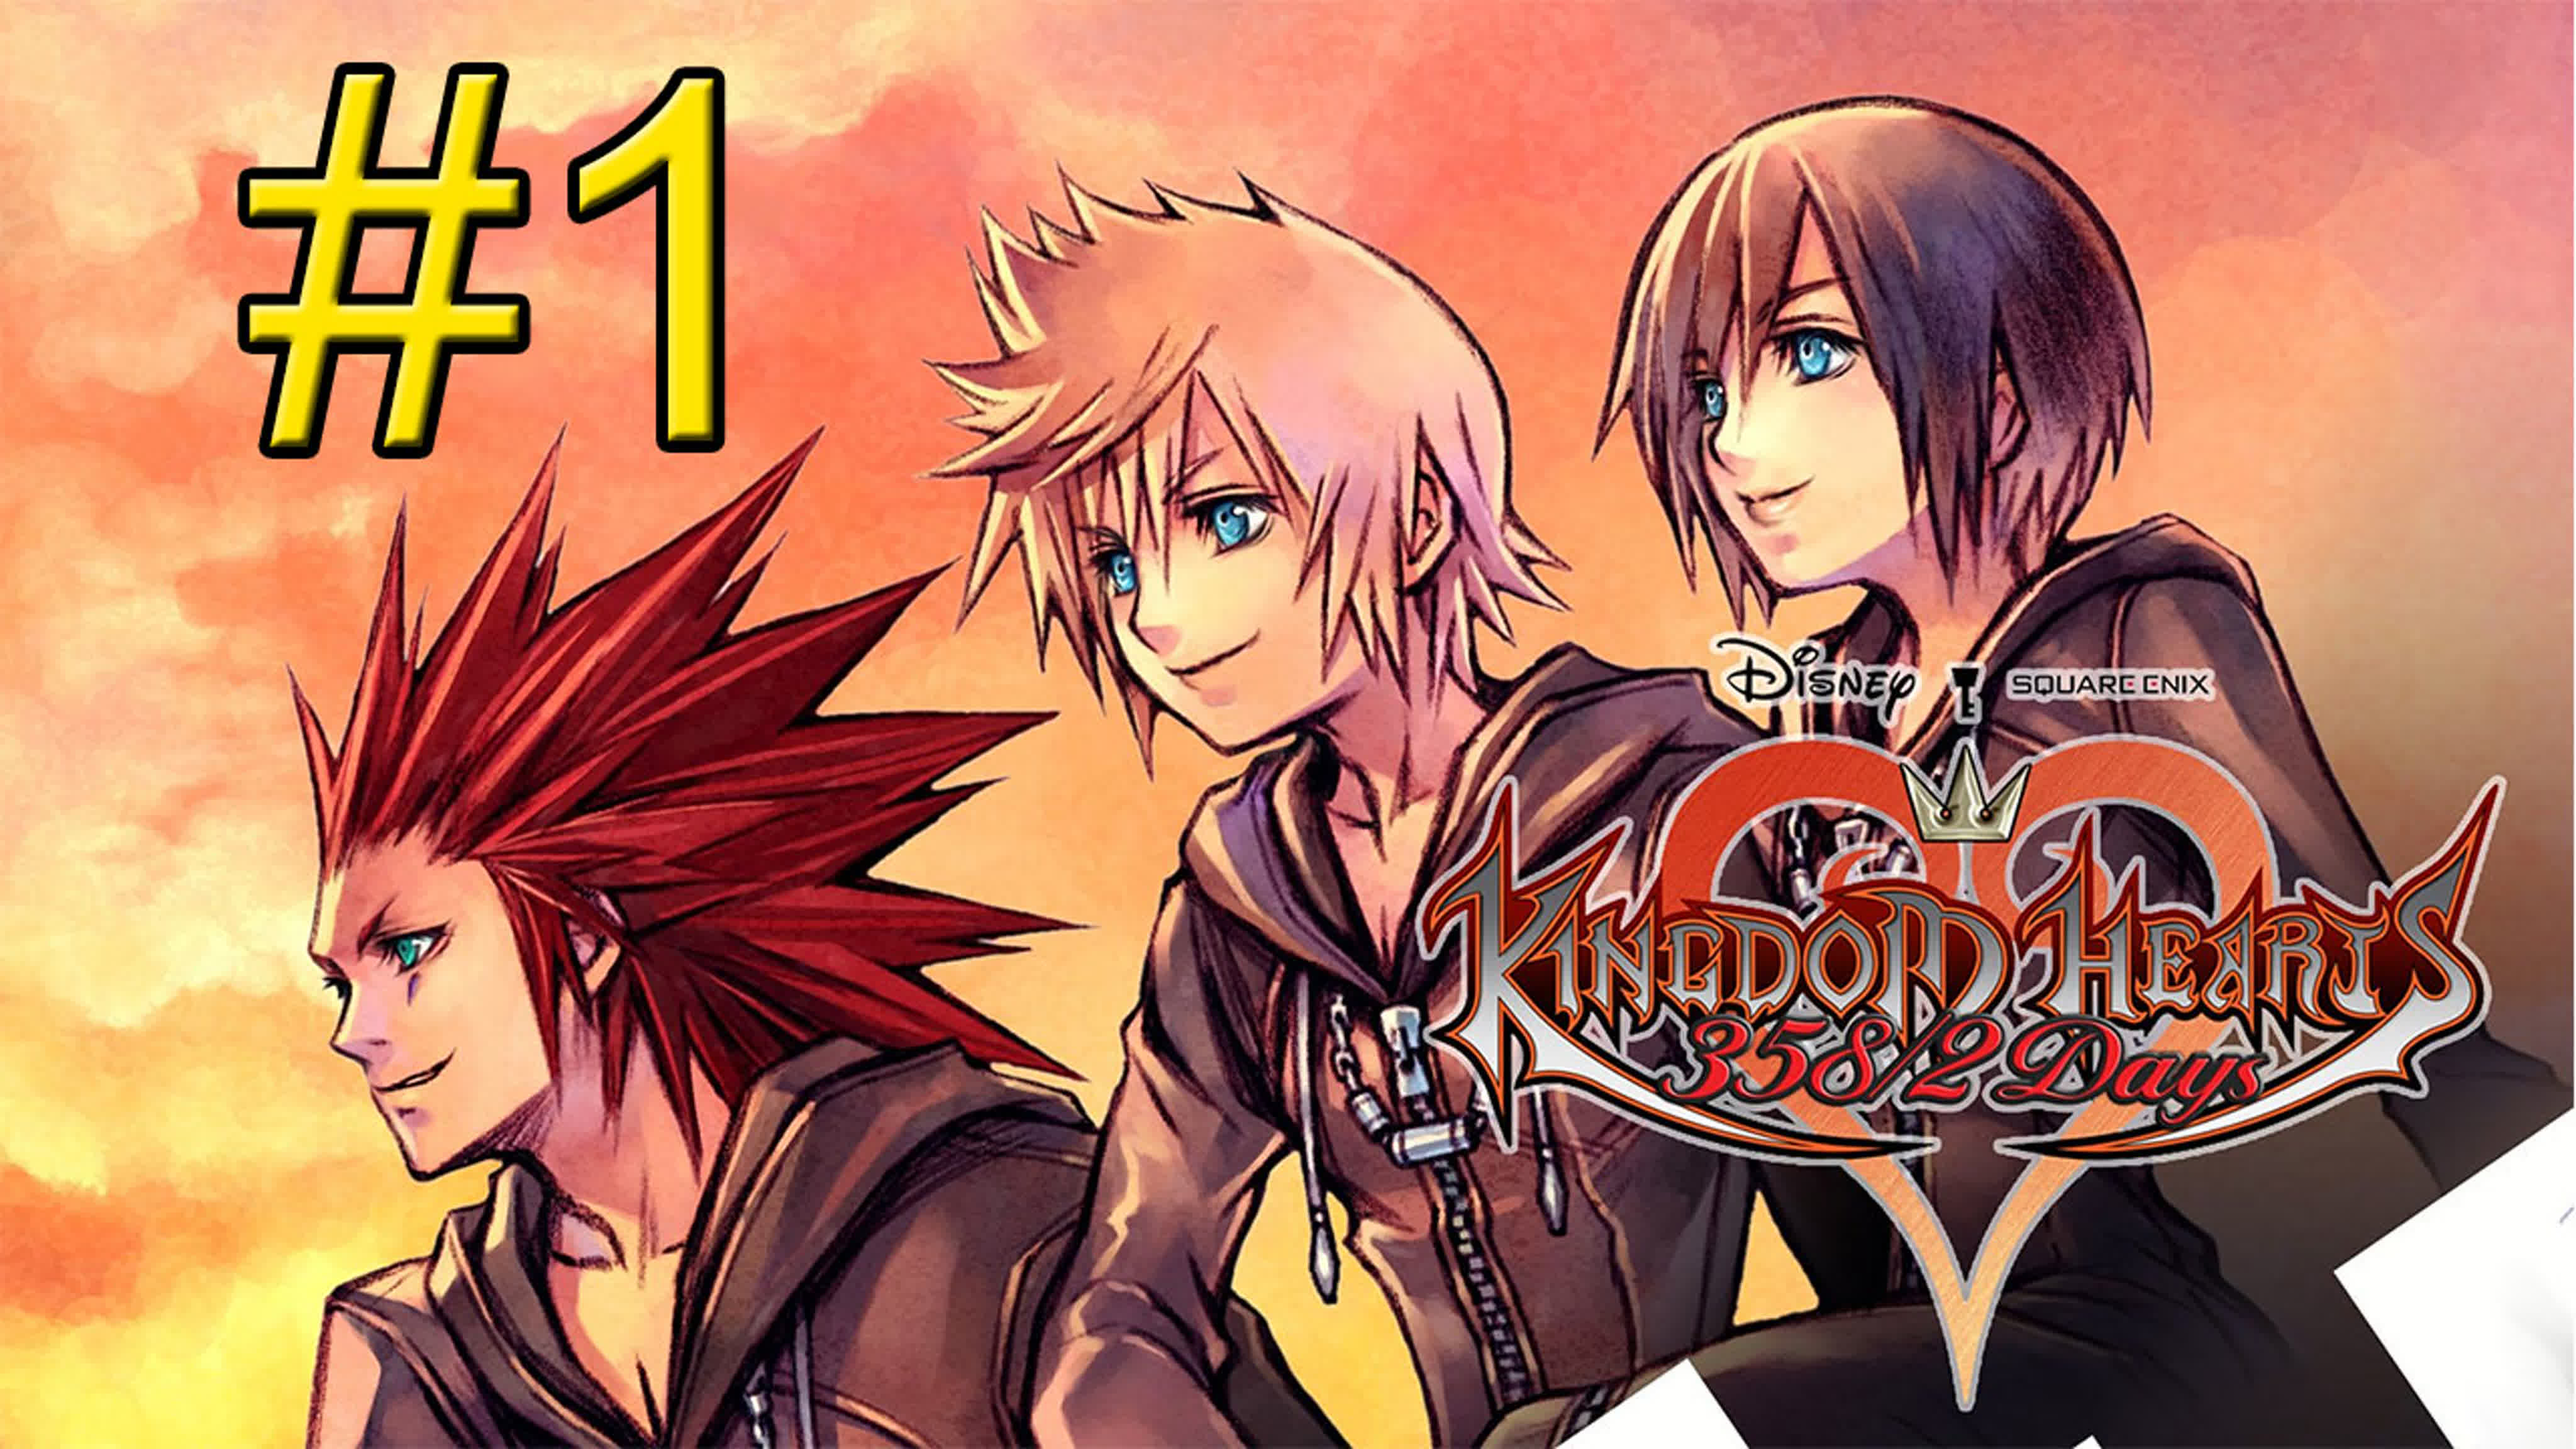 Kingdom Hearts 358 2 Days (PS3)